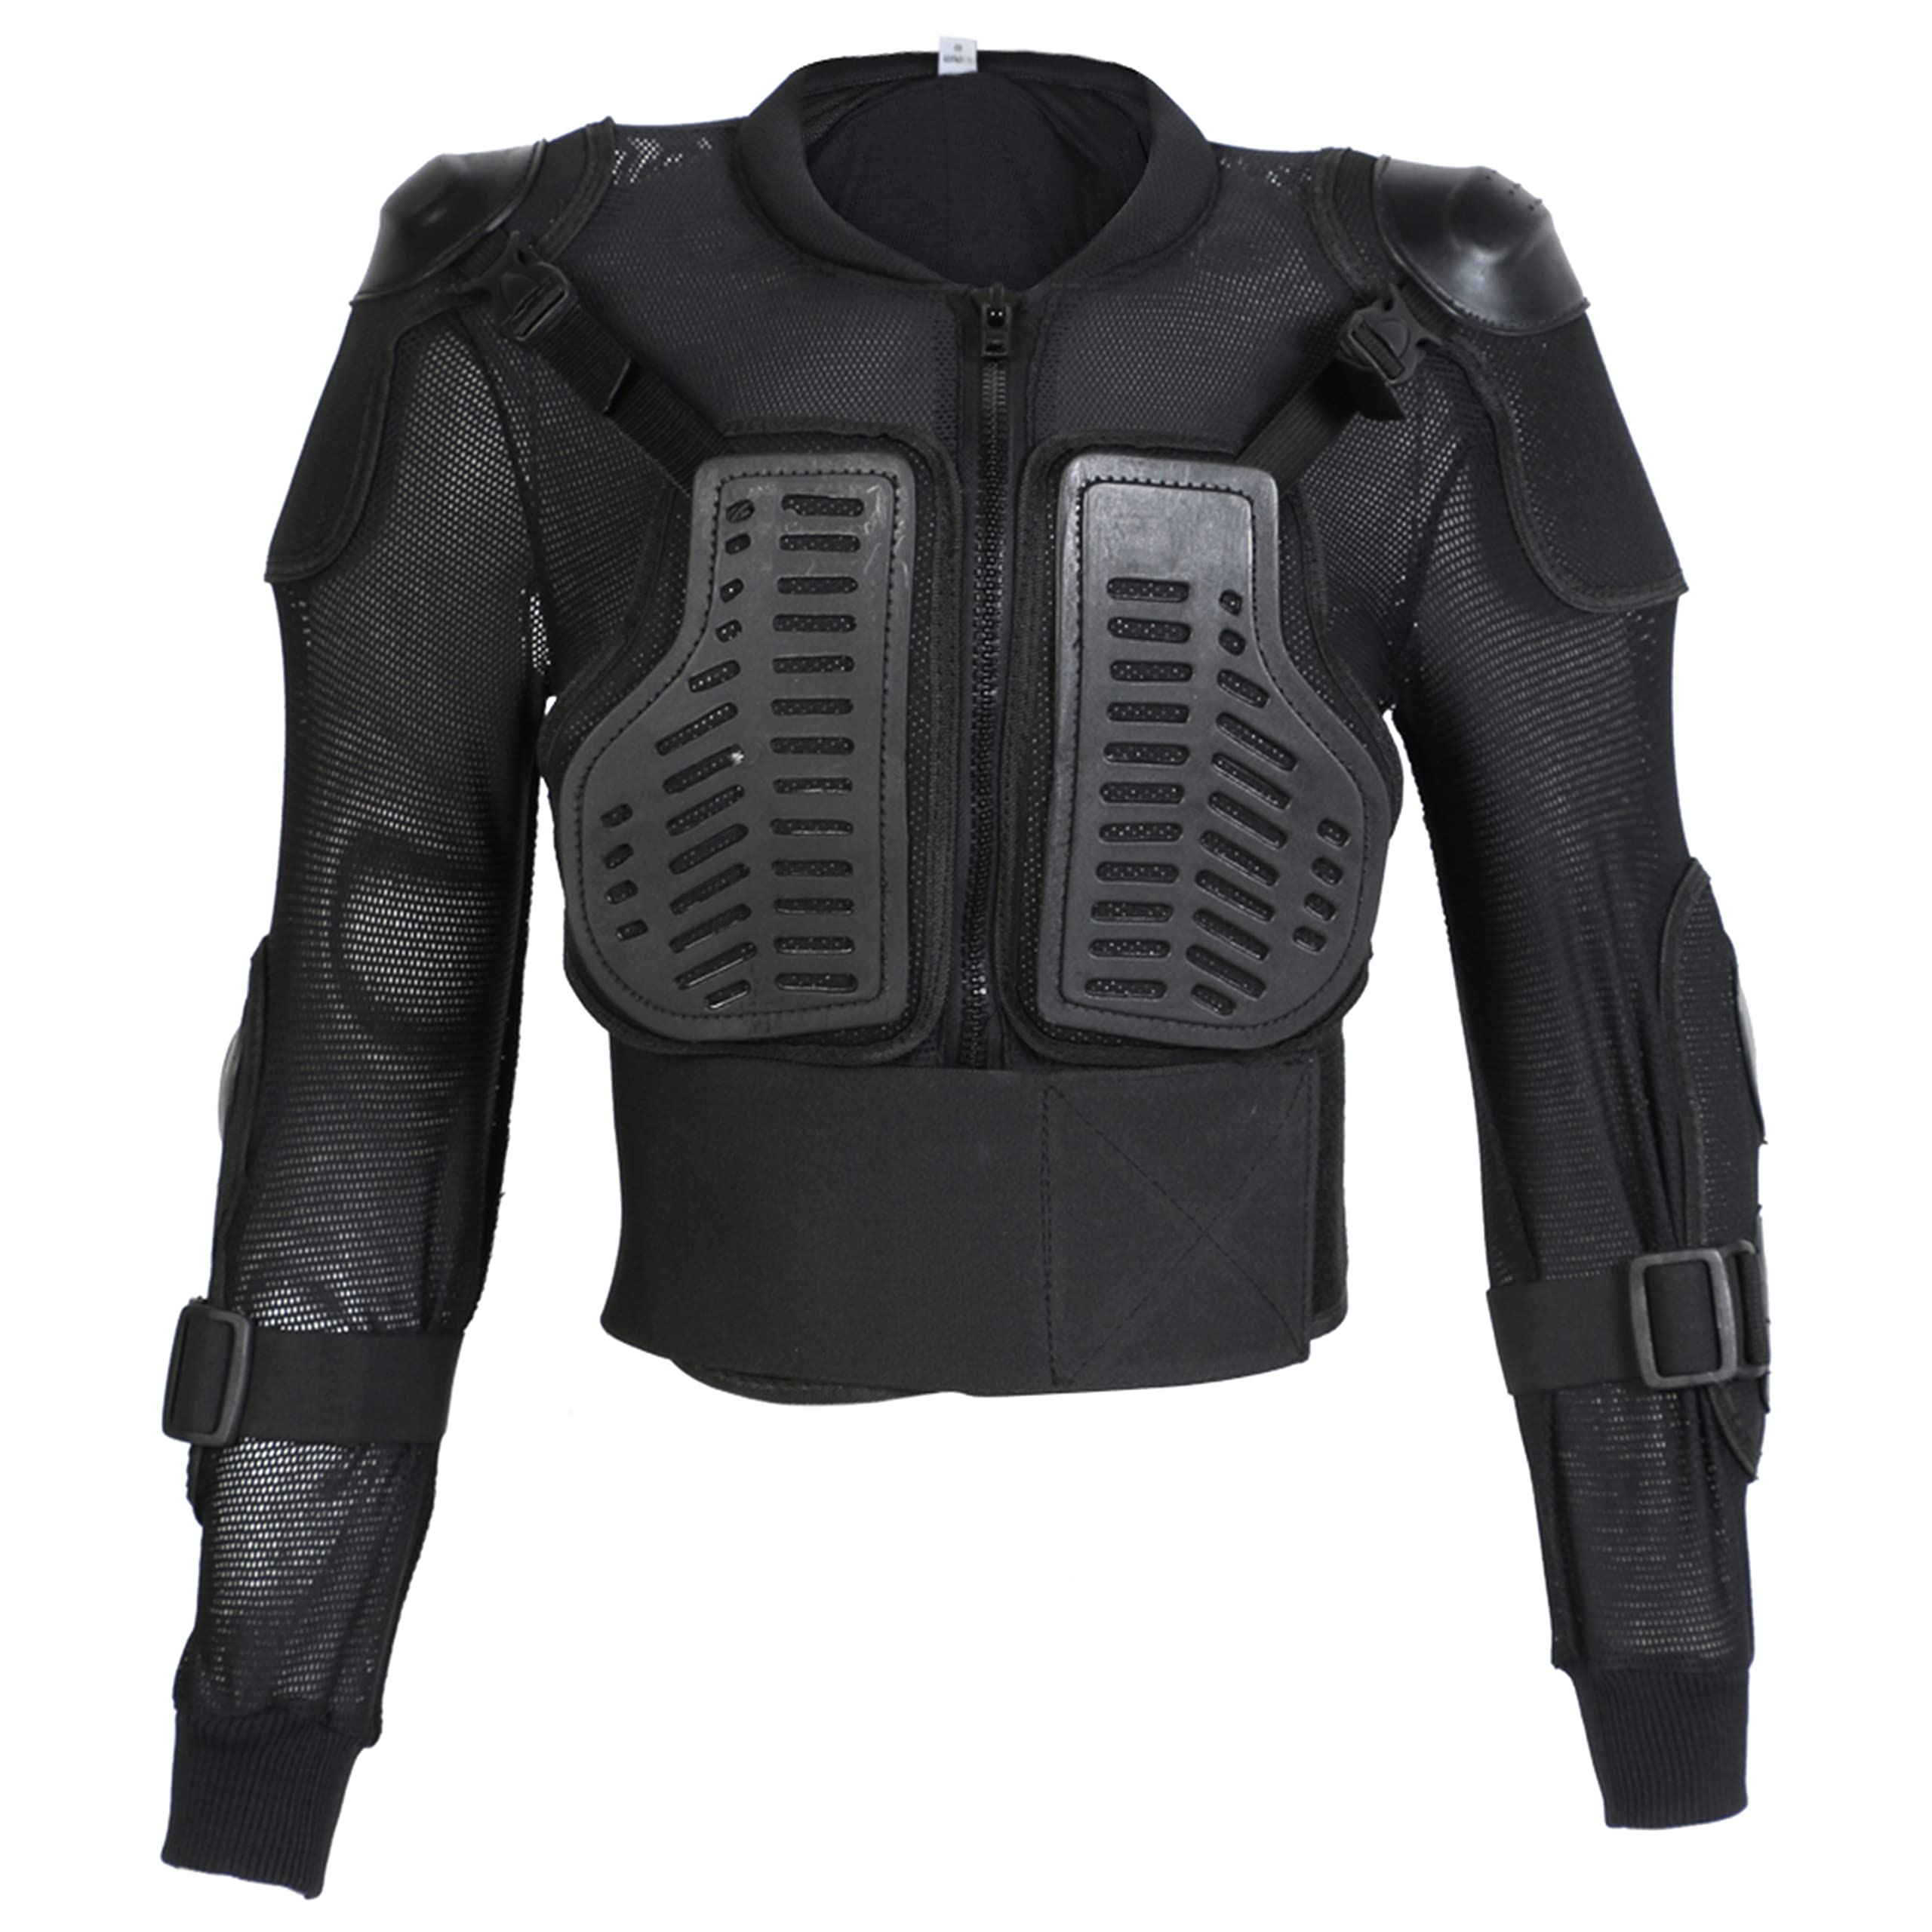 Texpeed - Kinder Motorradjacke Motocross jacke mit Rückenprotektor für sportliche Aktivitäten - Motorrad Brustschutz - Schwarz - 10 Jahre